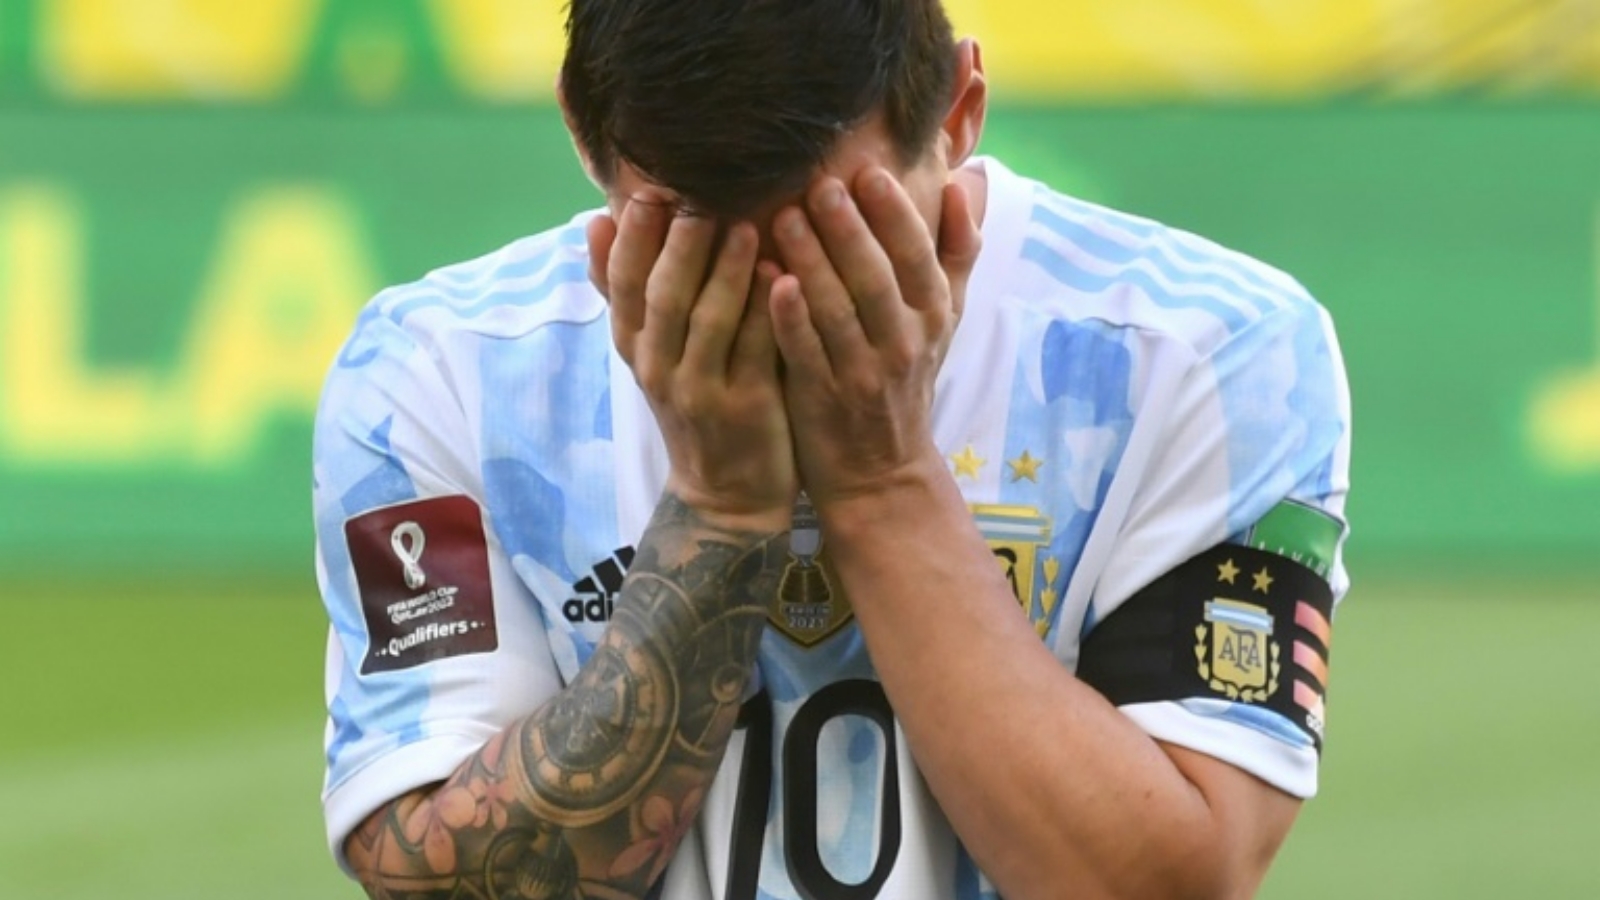 لقطة للنجم الأرجنتيني ليونيل ميسي قبل مواجهة البرازيل في تصفيات كأس العالم 2022. بتاريخ 5 أيلول/ سبتمبر 2021